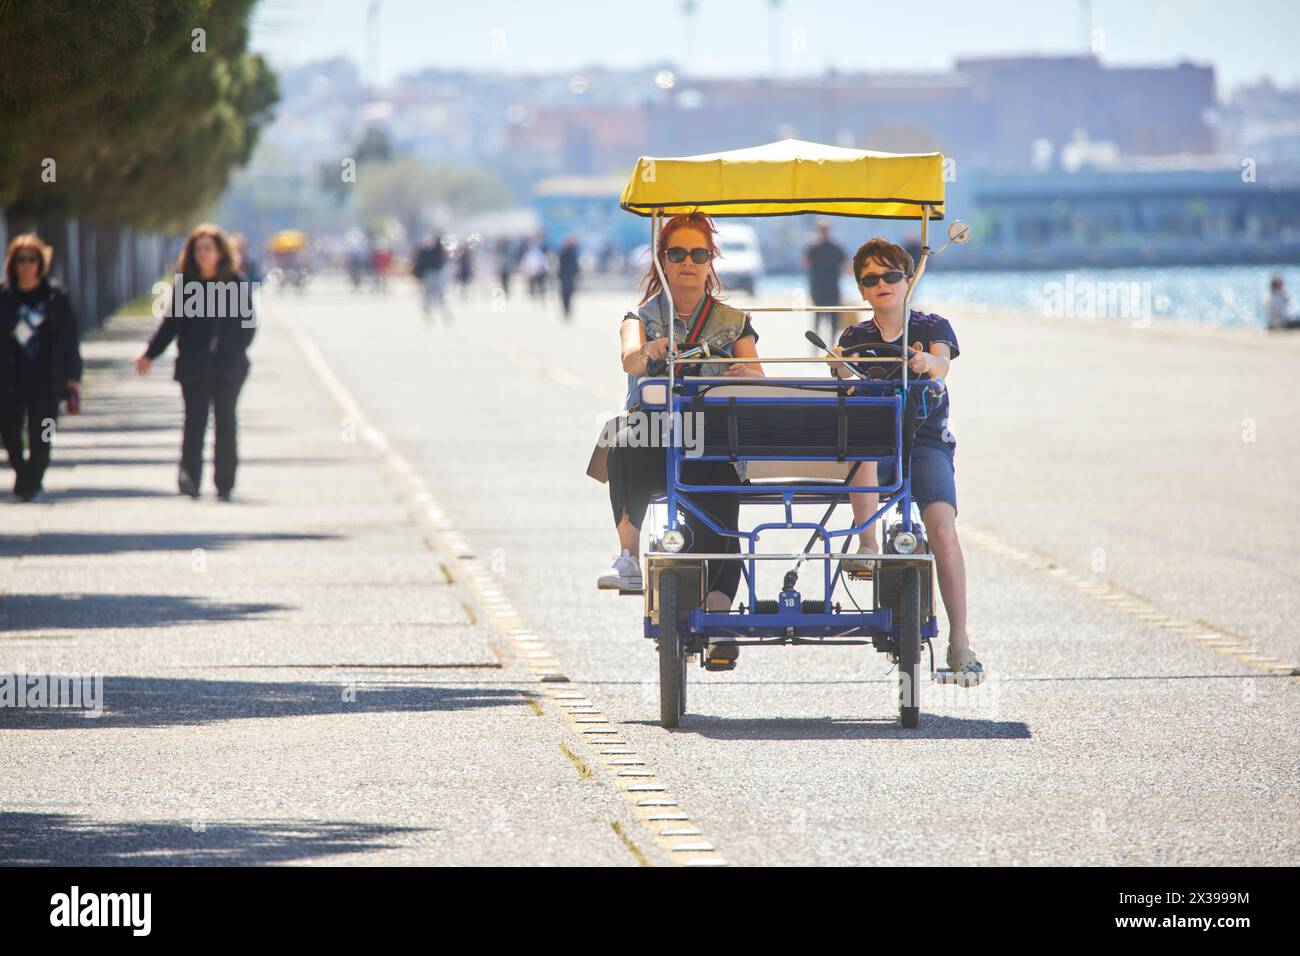 Salonicco, città greca della Macedonia, nel nord della Grecia, percorso ciclabile sul lungomare Foto Stock